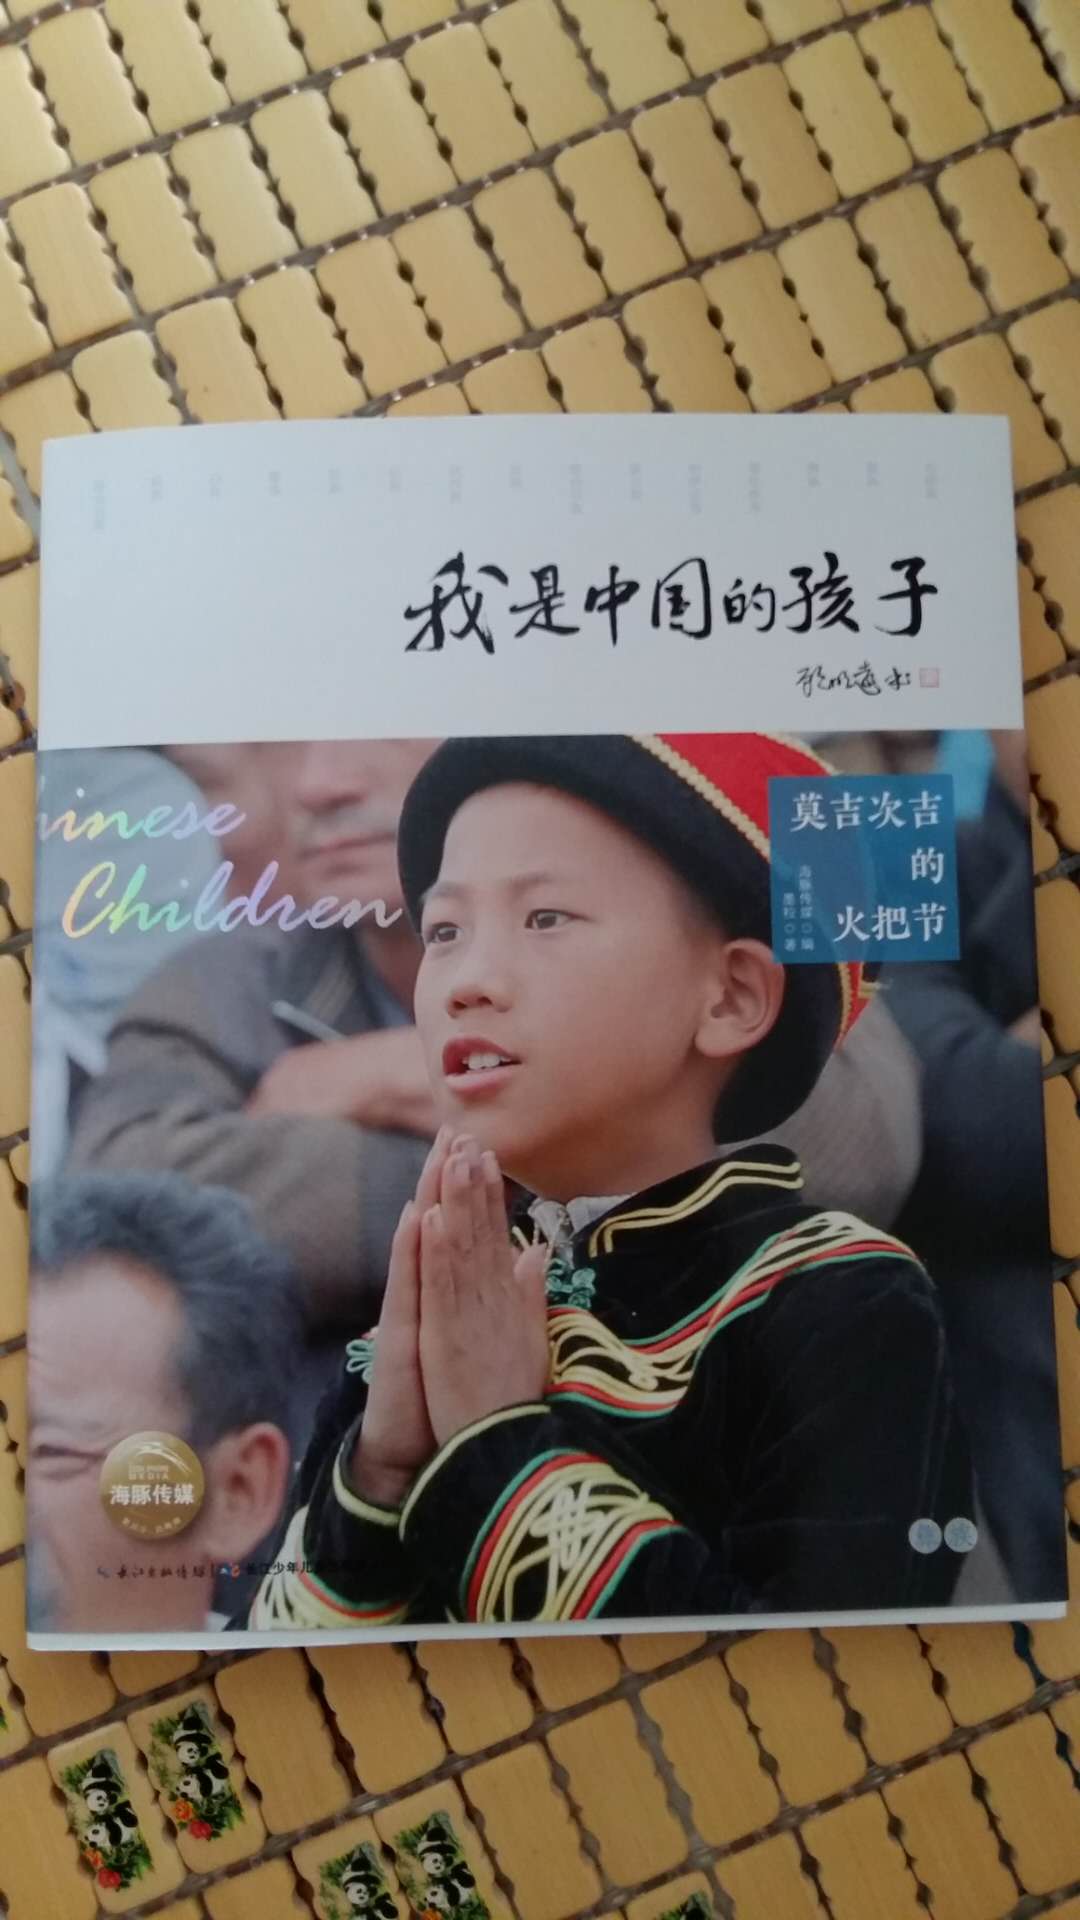 这是一套很有意义的书籍，值得阅读。书中图文并茂，可以了解各少数民族的文化特色以及不同民族的孩子们的成长写真。